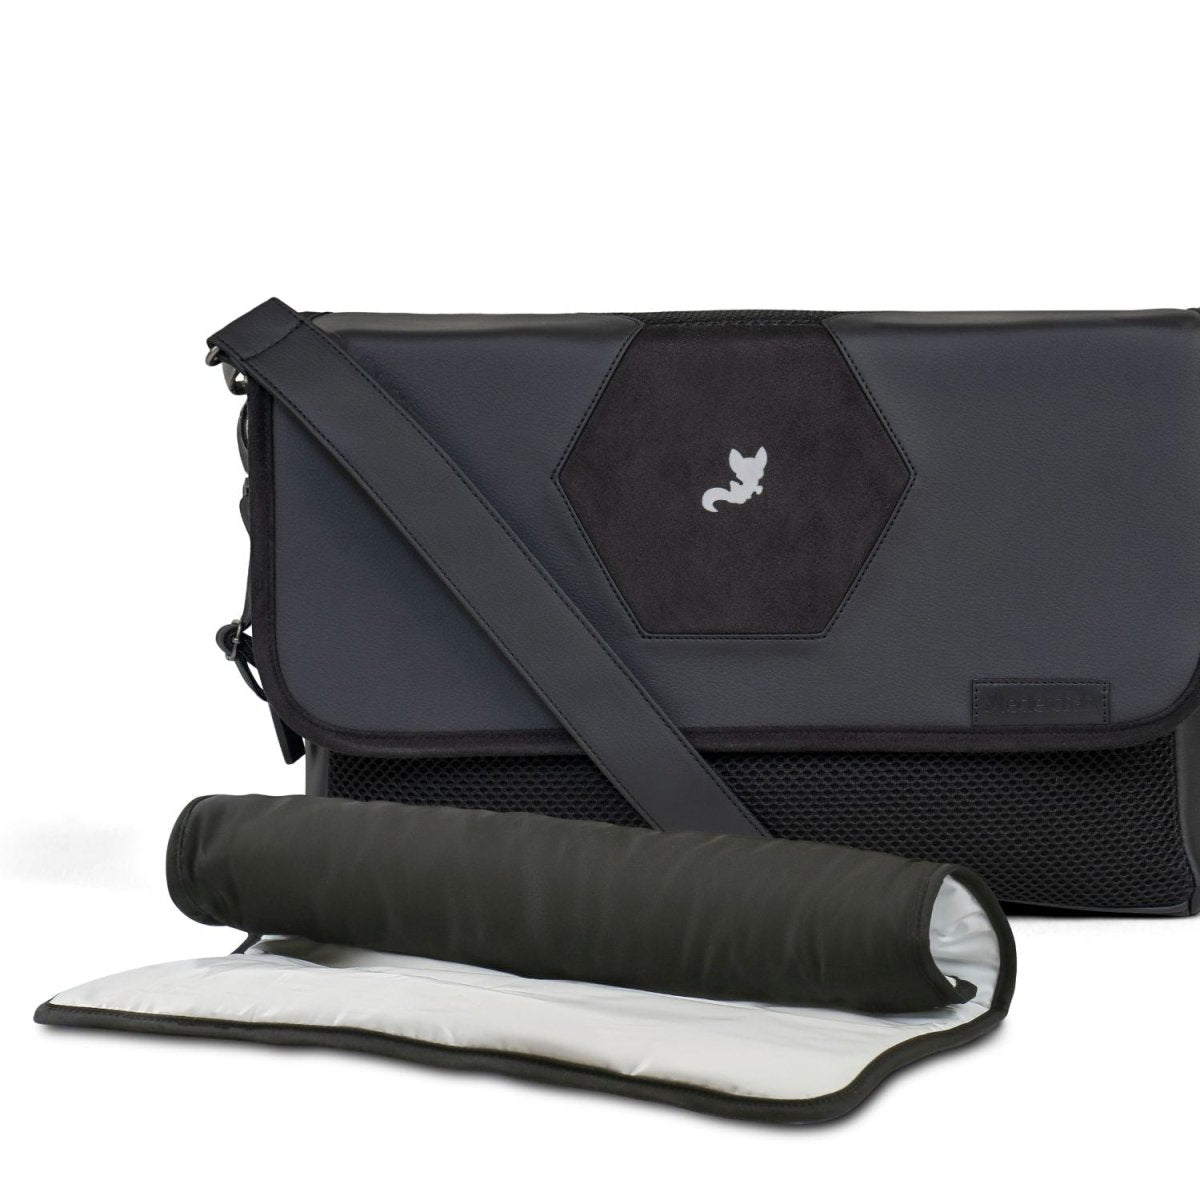 Leclercbaby Bundle Deal Hexagon Carbon Black (Stroller + Diaper Bag) - BUNHEX030